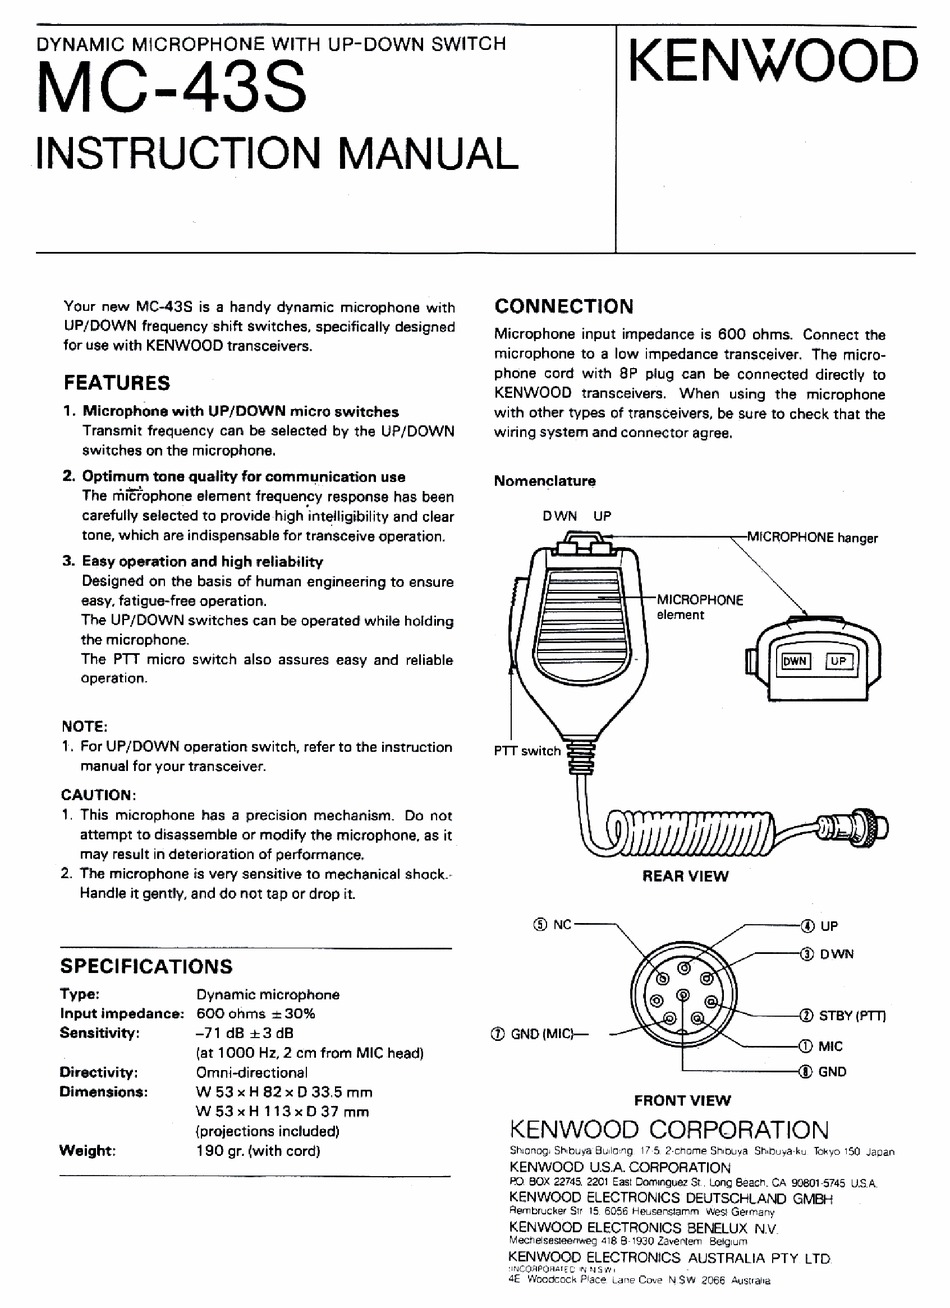 Kenwood Mc 43s Instruction Manual Pdf, Kenwood Mic Wiring Diagram